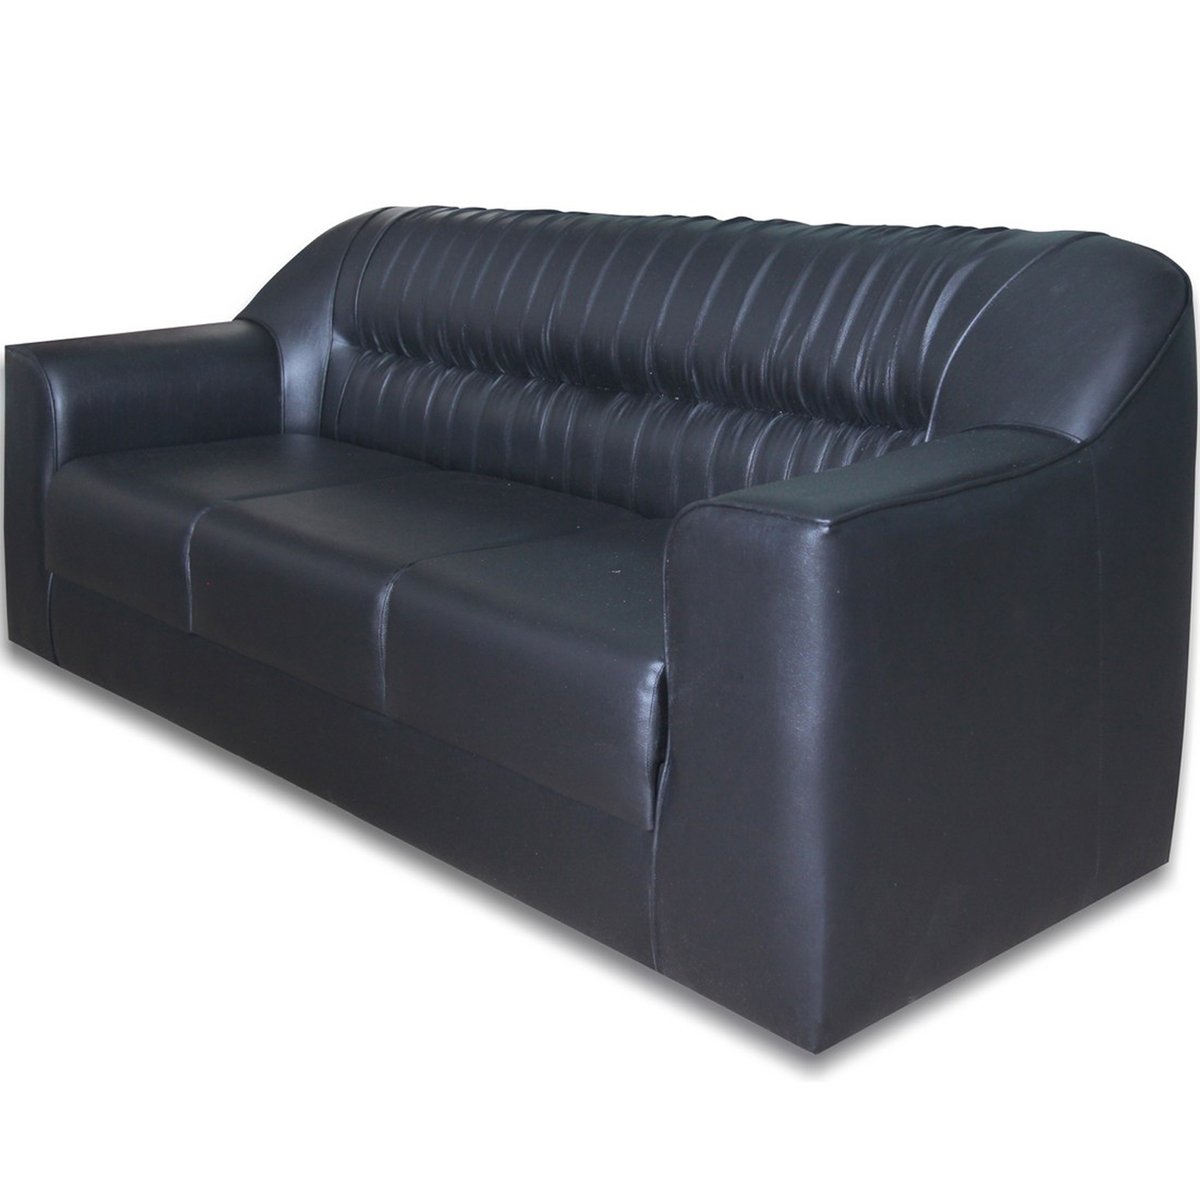 Design Plus Sofa Set 5 Seater (3+1+1) Black